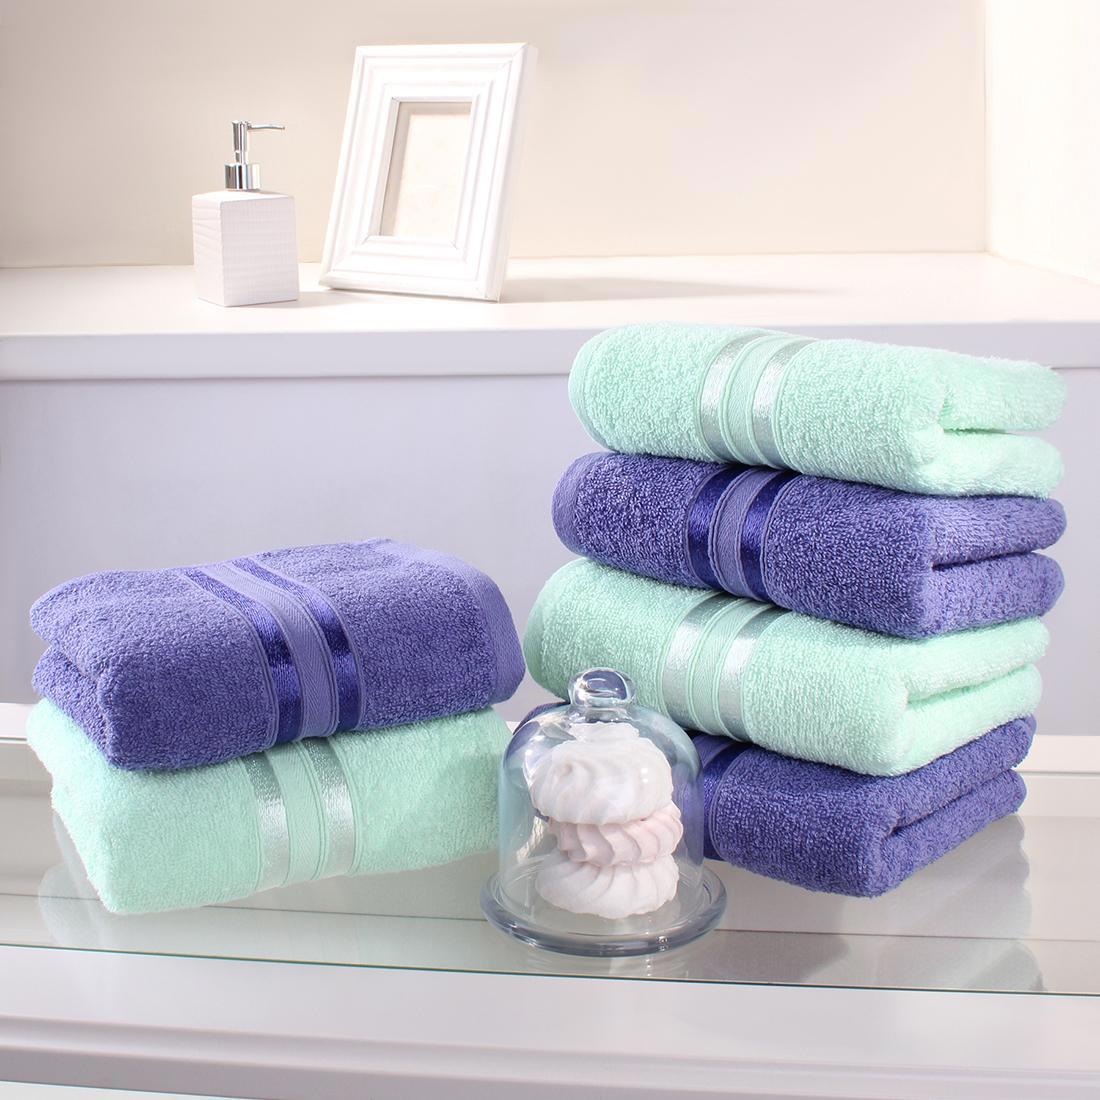 Озон полотенца для ванны. Полотенца Harmonika. Сиреневое полотенце. Полотенца в ванной. Набор полотенец для ванной.